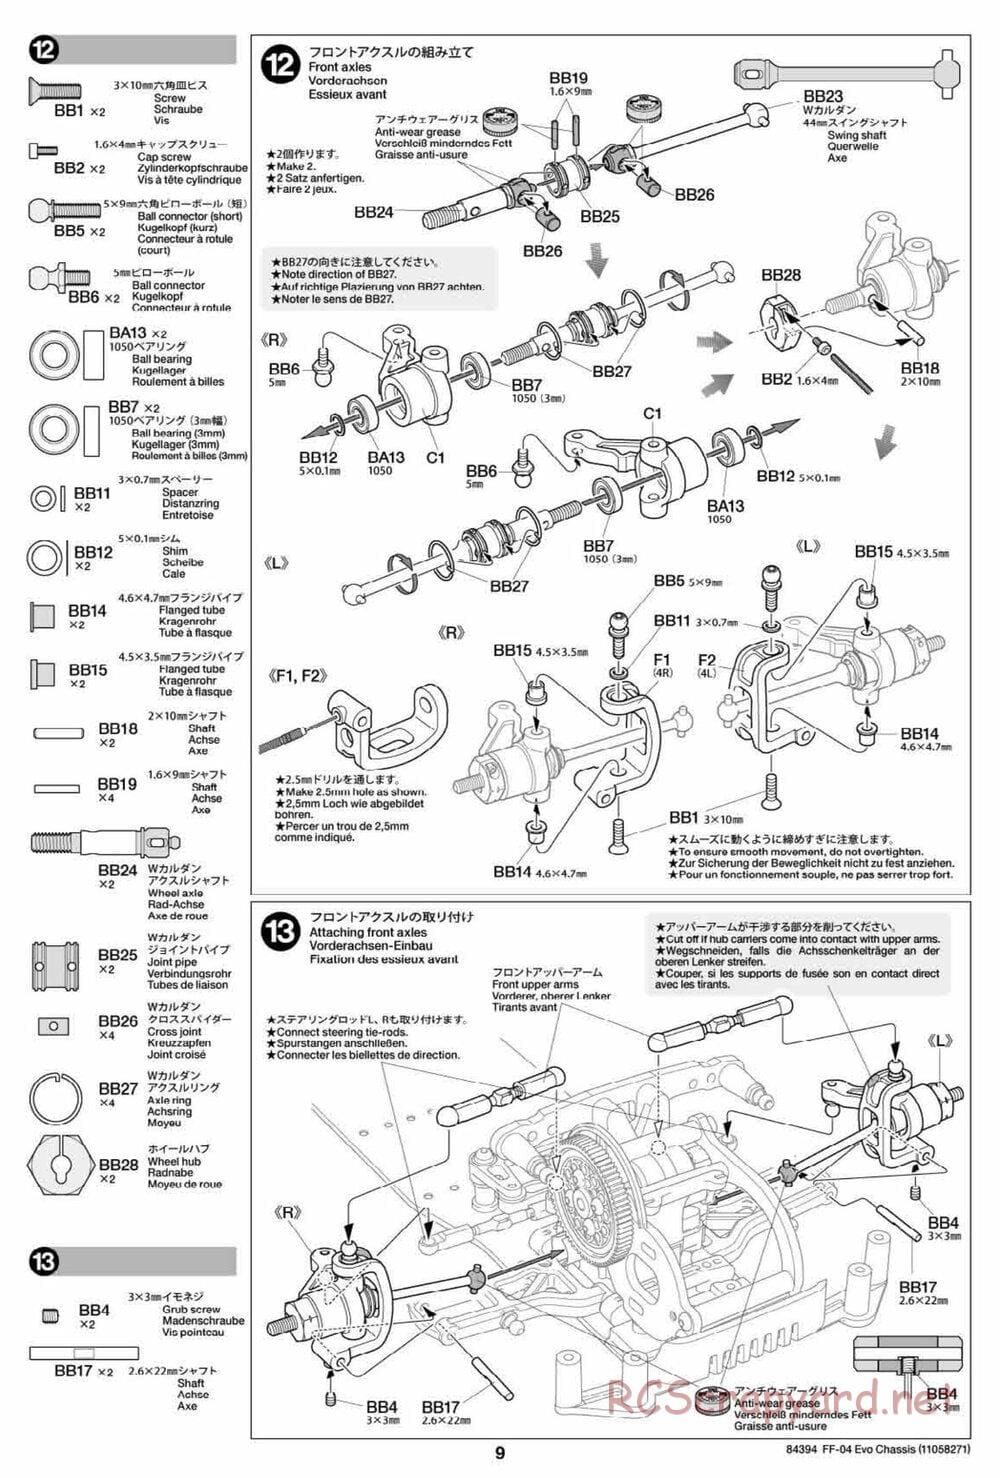 Tamiya - FF-04 Evo Chassis - Manual - Page 9